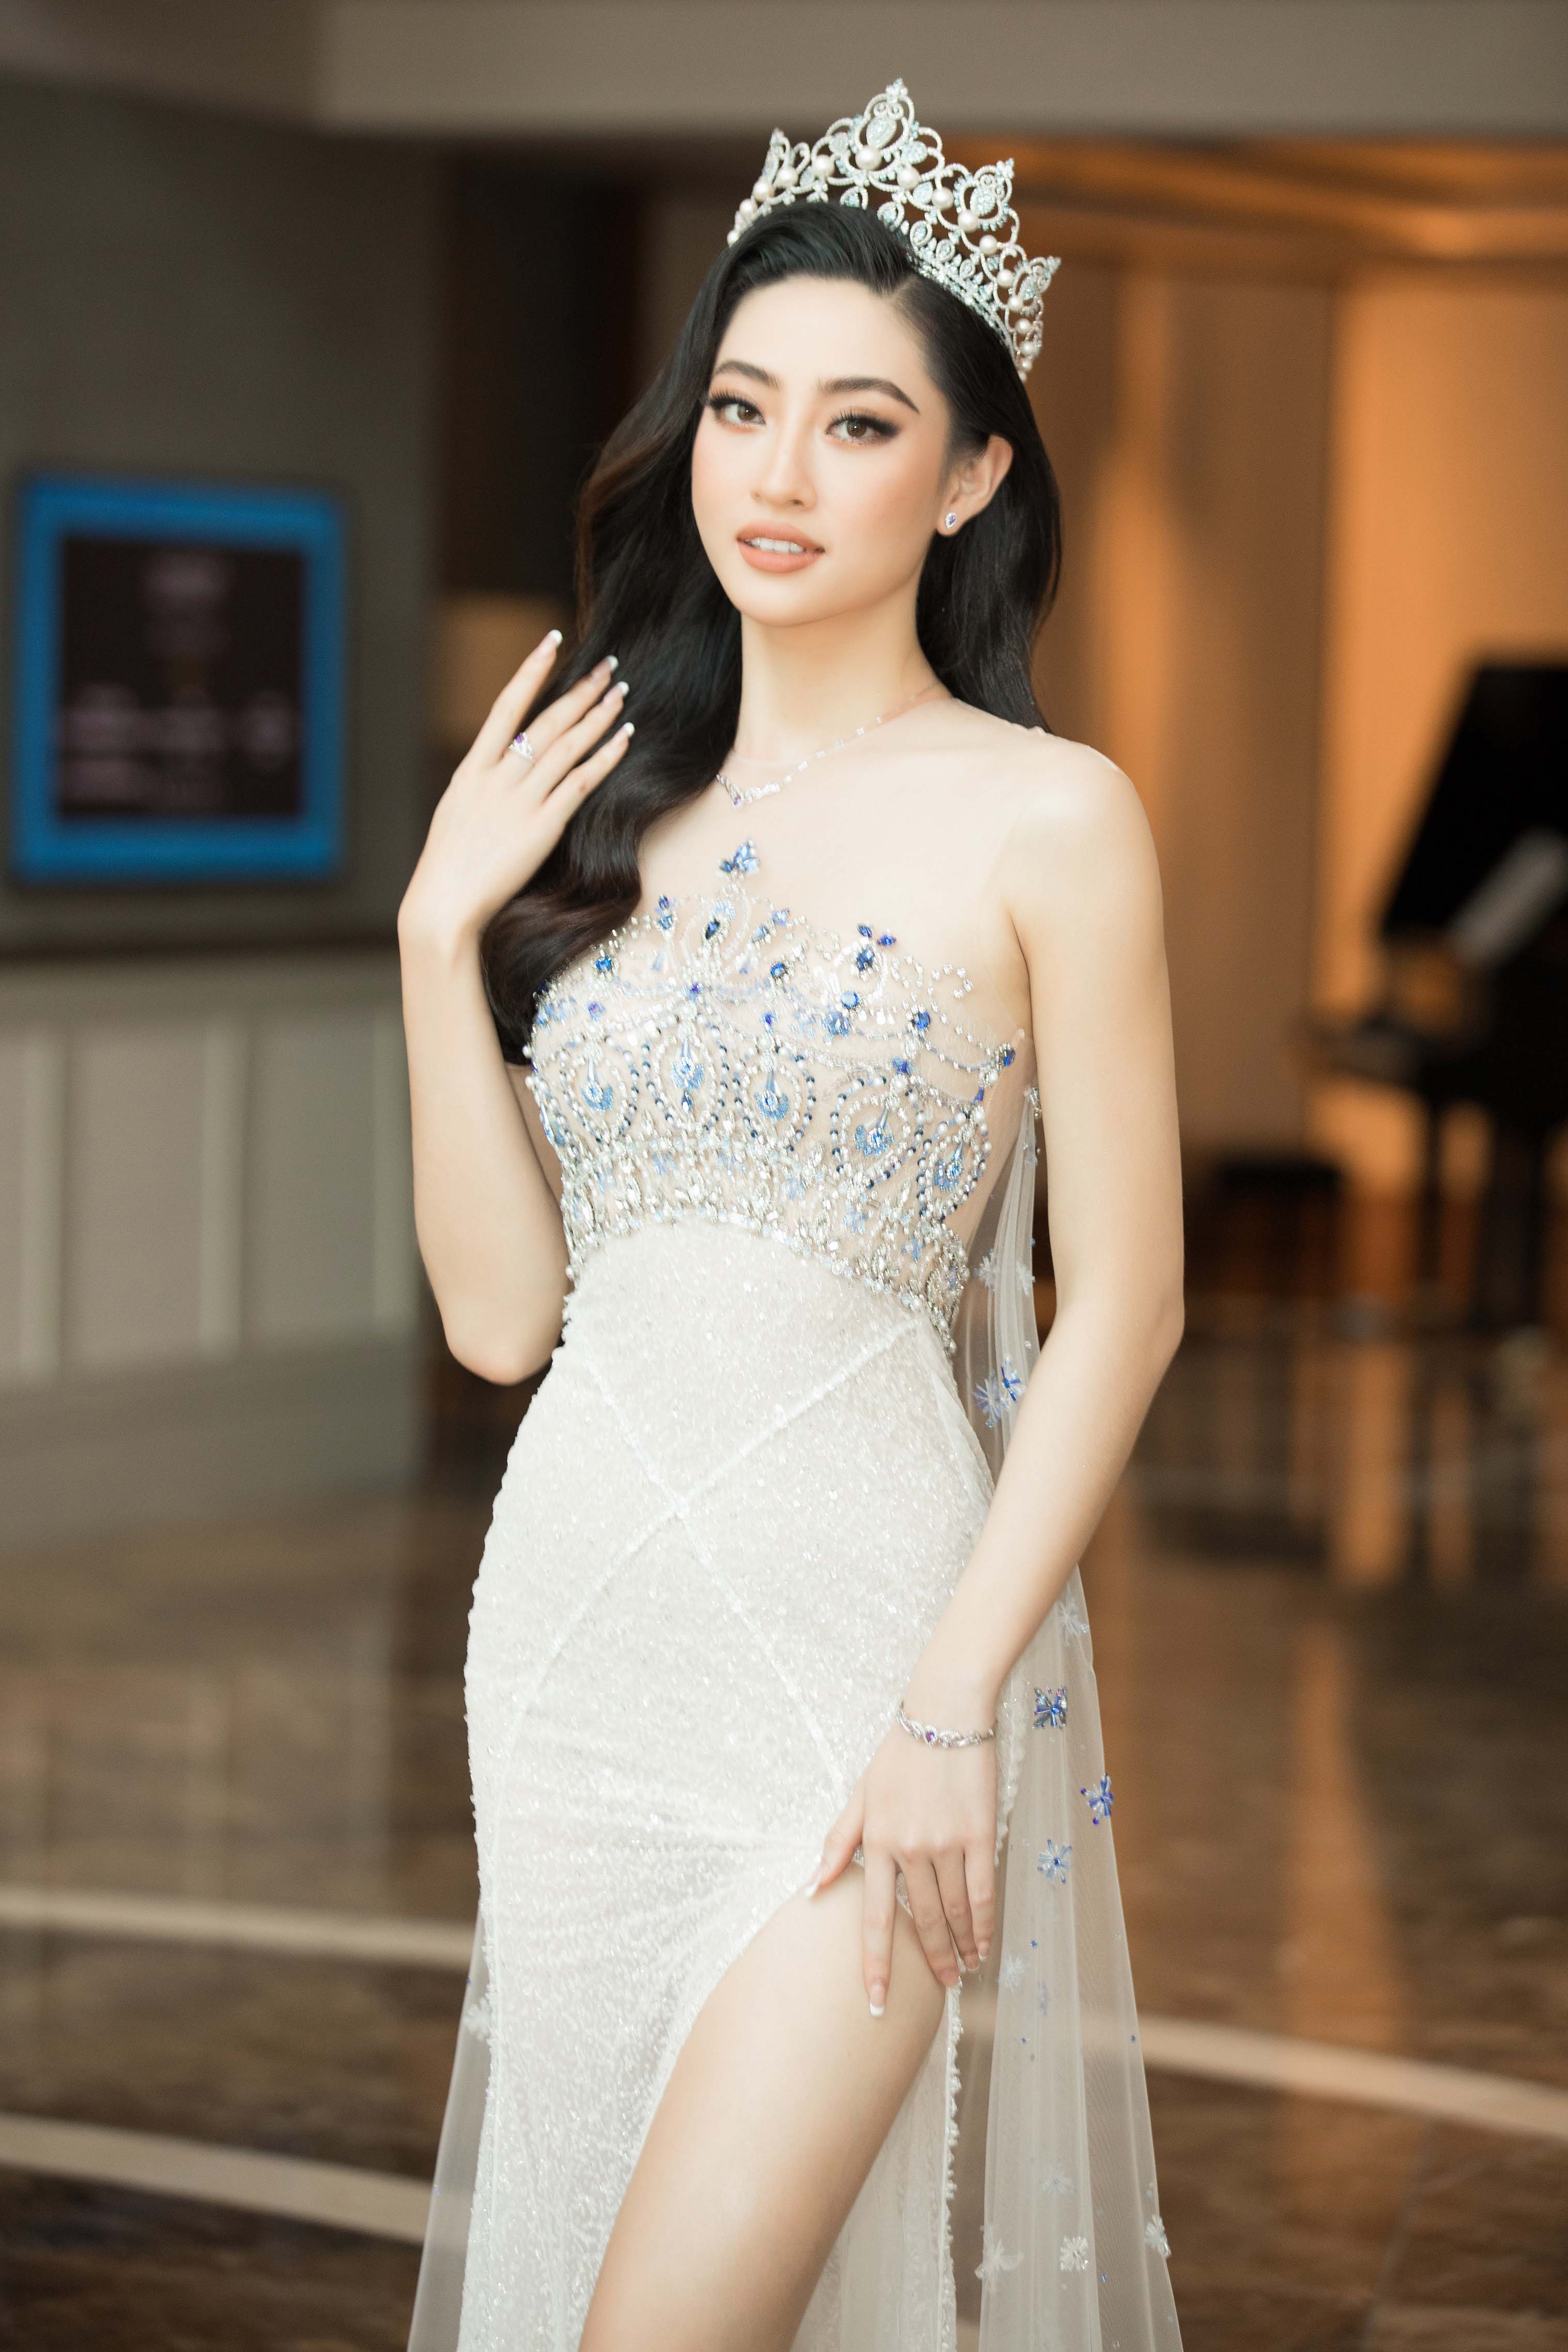   Với chiều cao 1m78 cùng nhan sắc ngày một thăng hạng, đương kim Hoa hậu Lương Thuỳ Linh dường như chiếm trọn spotlight tại sự kiện lần này. 